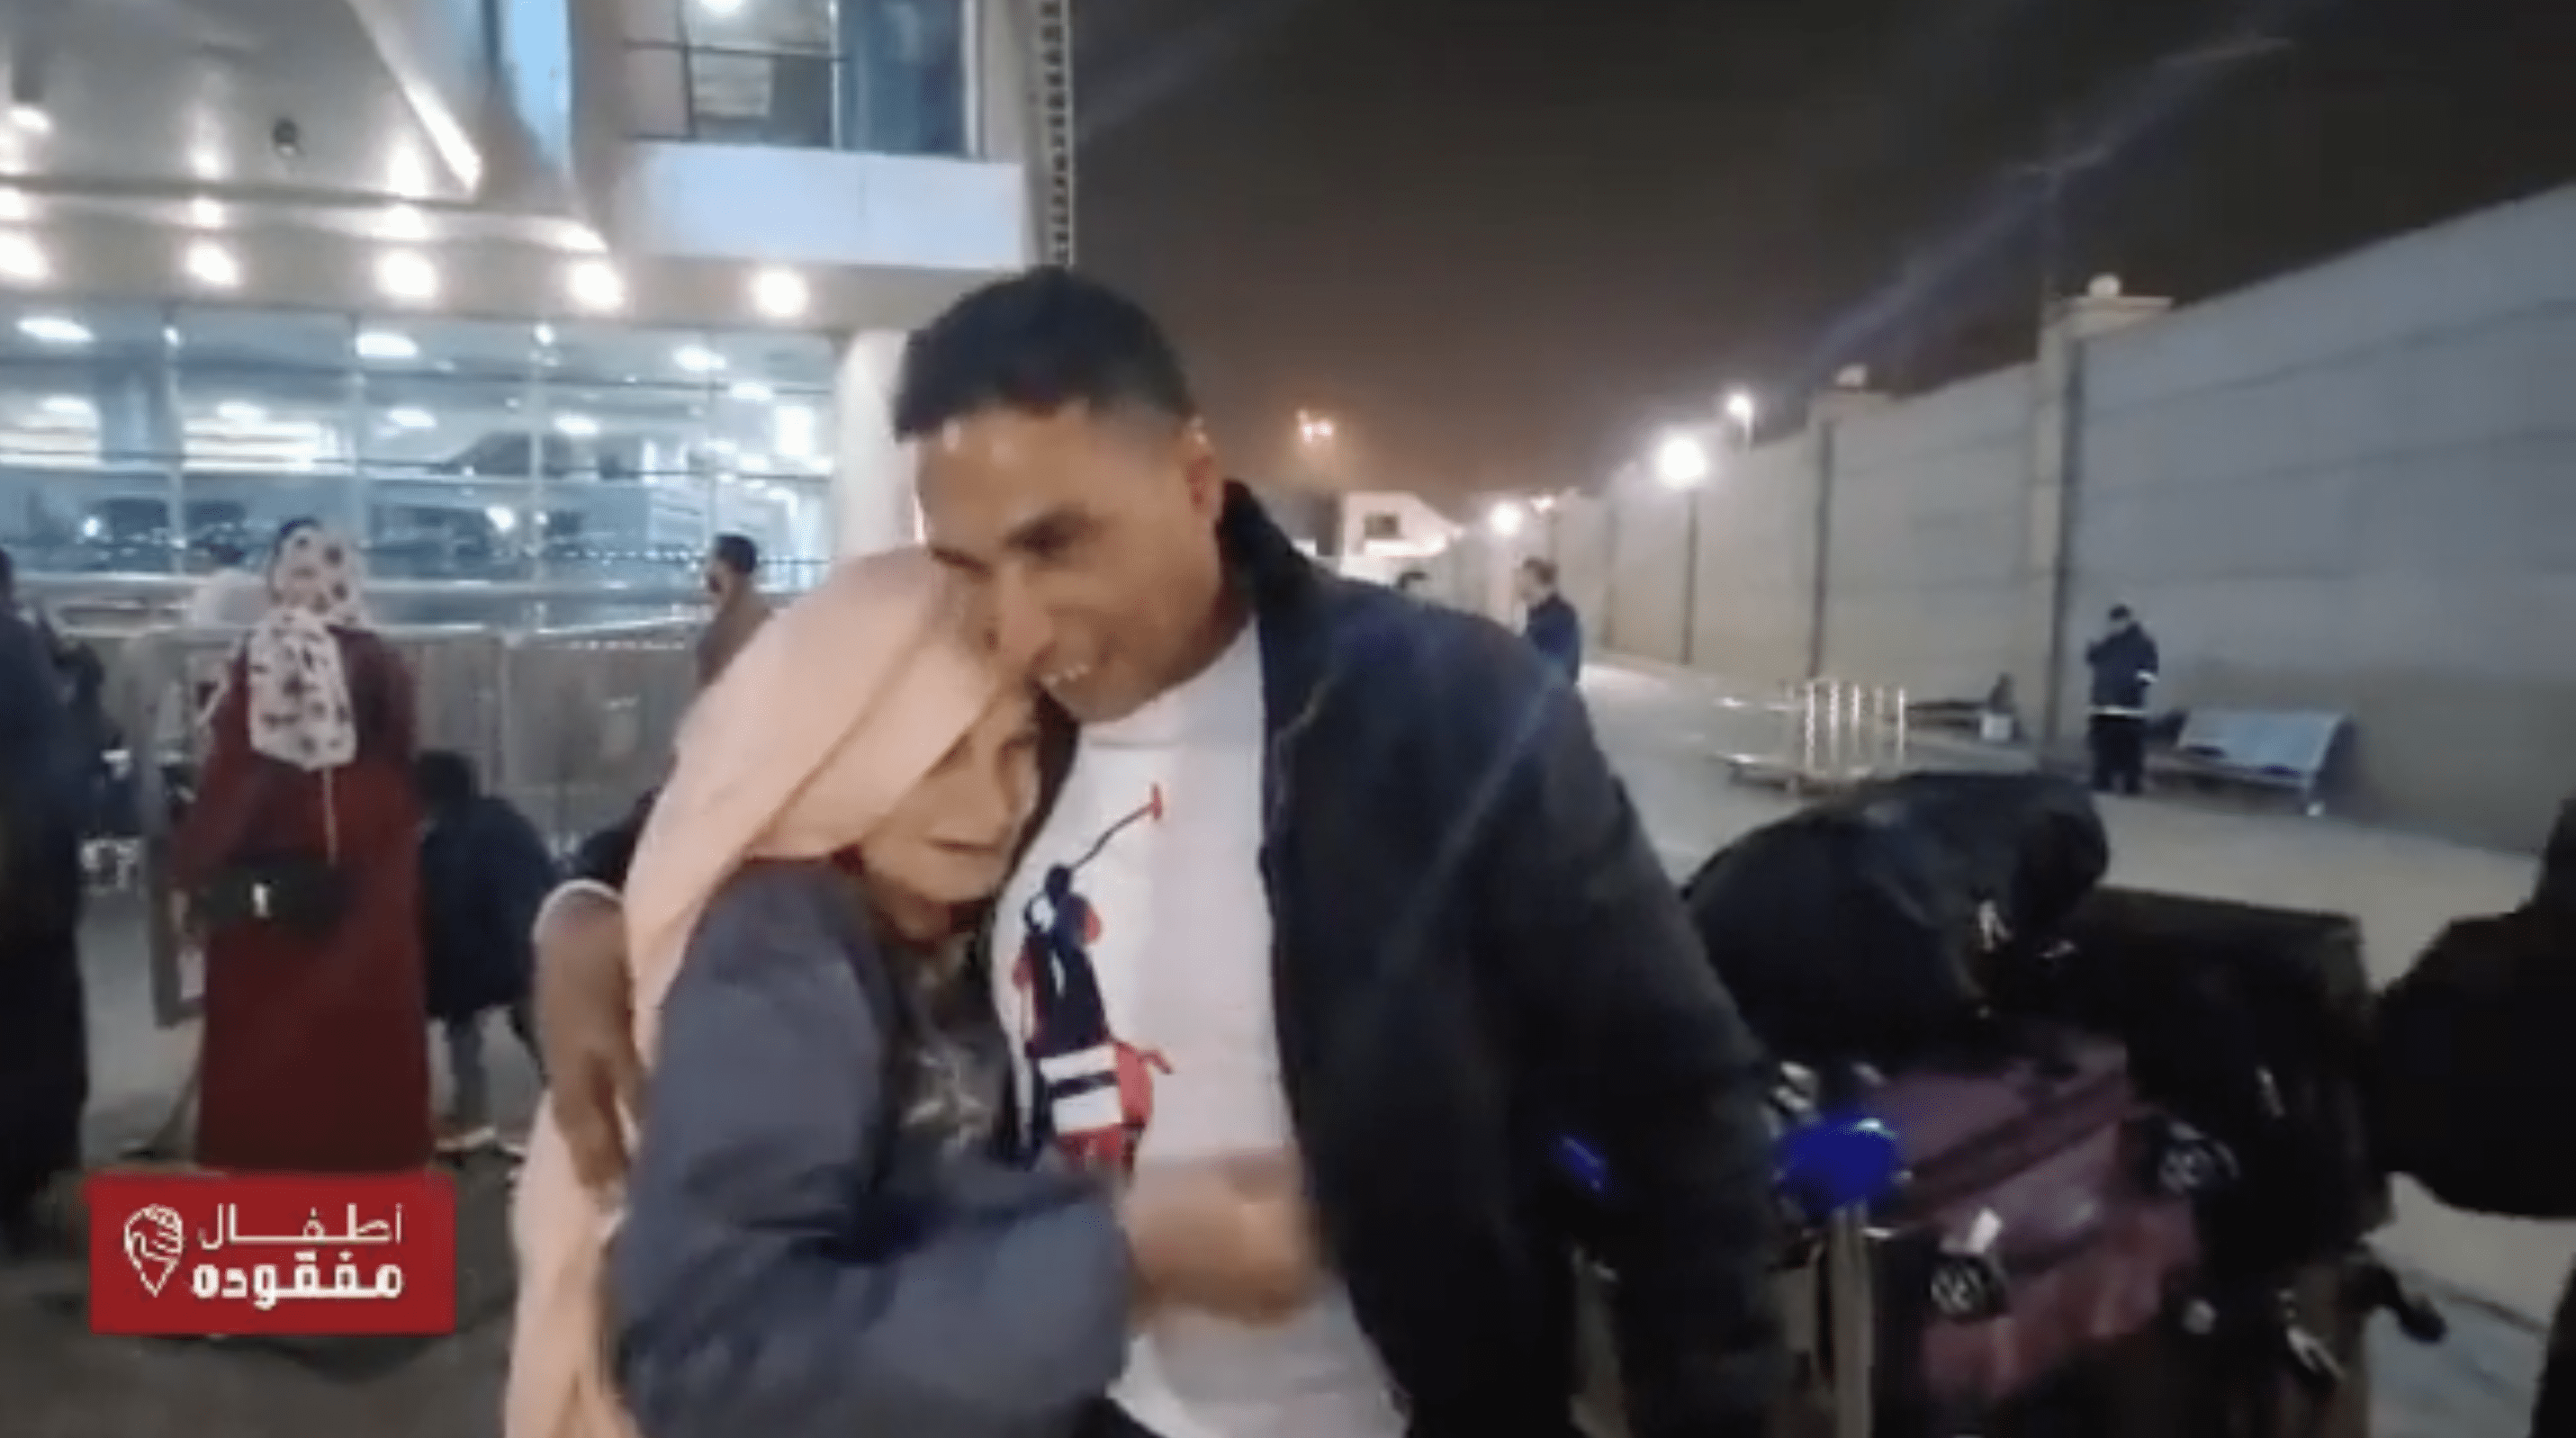 Wissam Mohamed abraza a su madre Reda Mahmoud en el aeropuerto. | Foto: facebook.com/atfalmafkoda